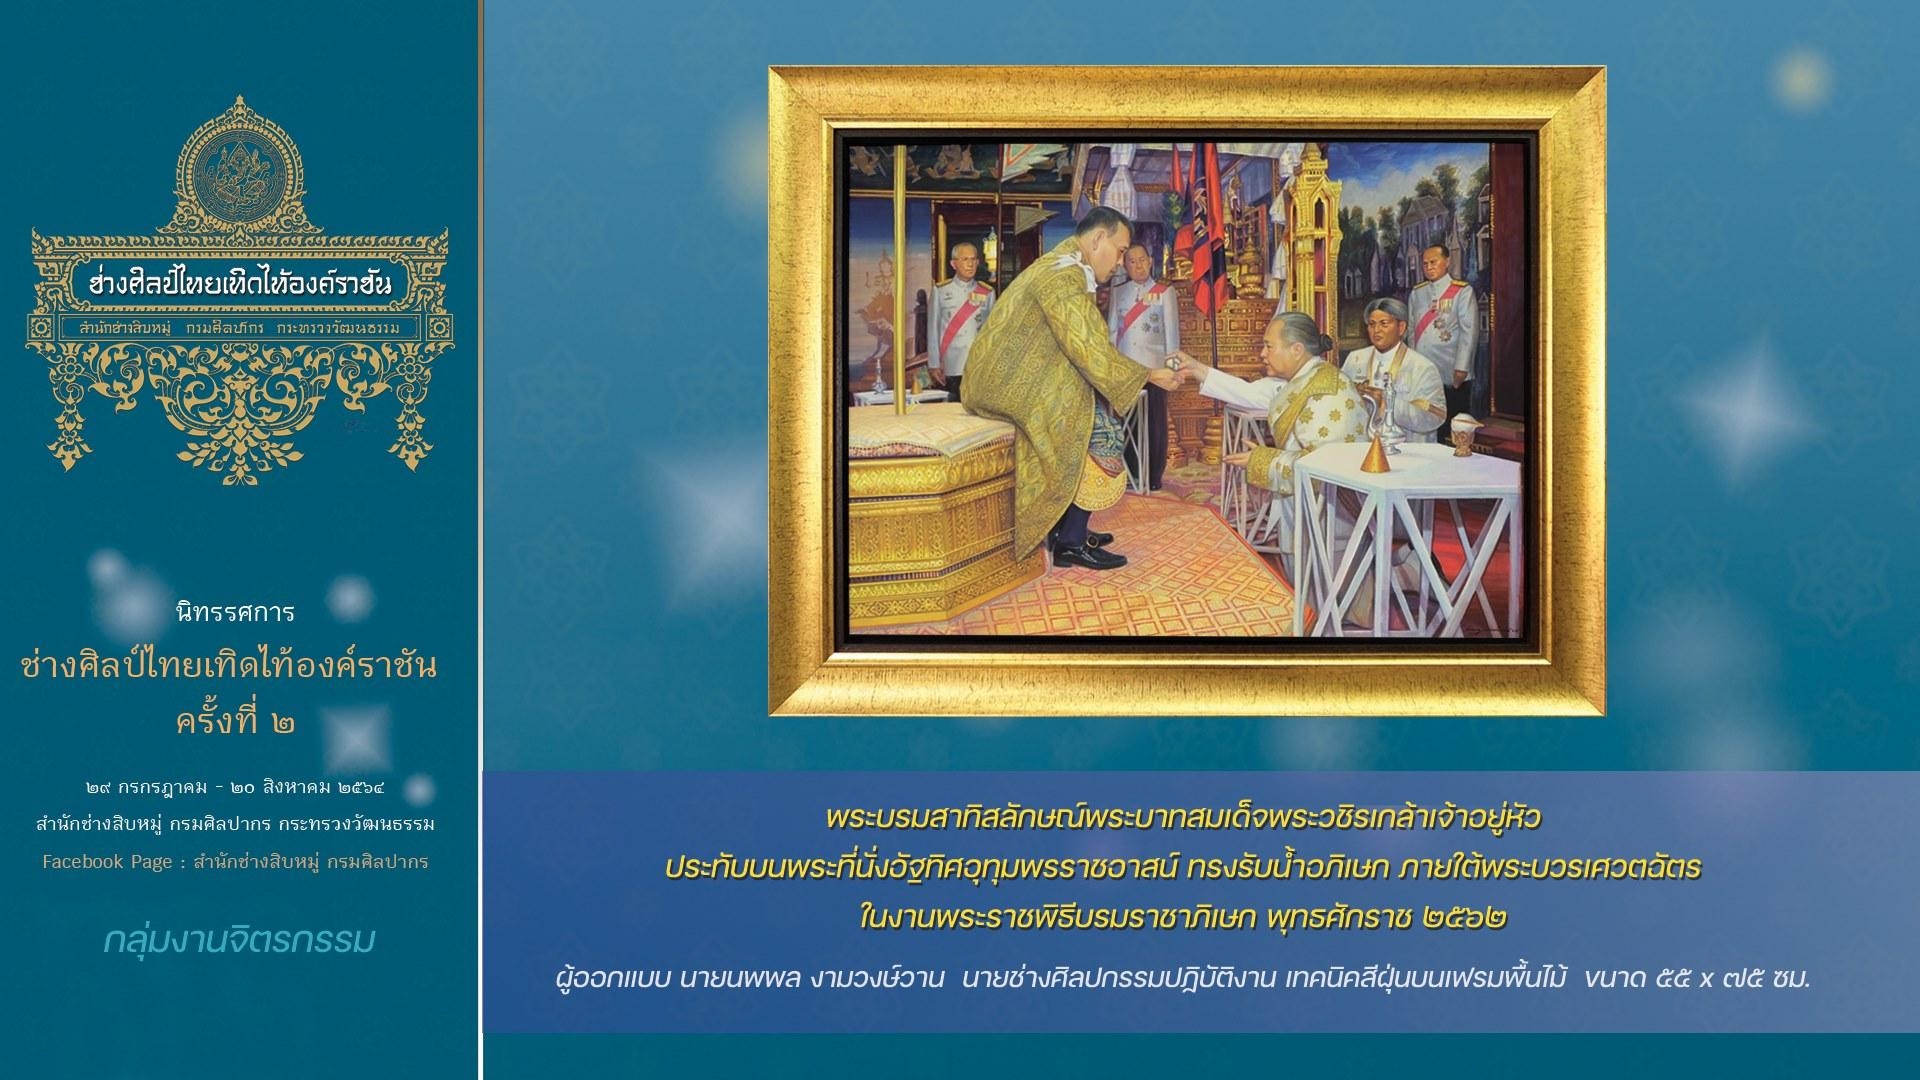 นิทรรศการ  ช่างศิลป์ไทย เทิดไท้องค์ราชัน  ครั้งที่ ๒